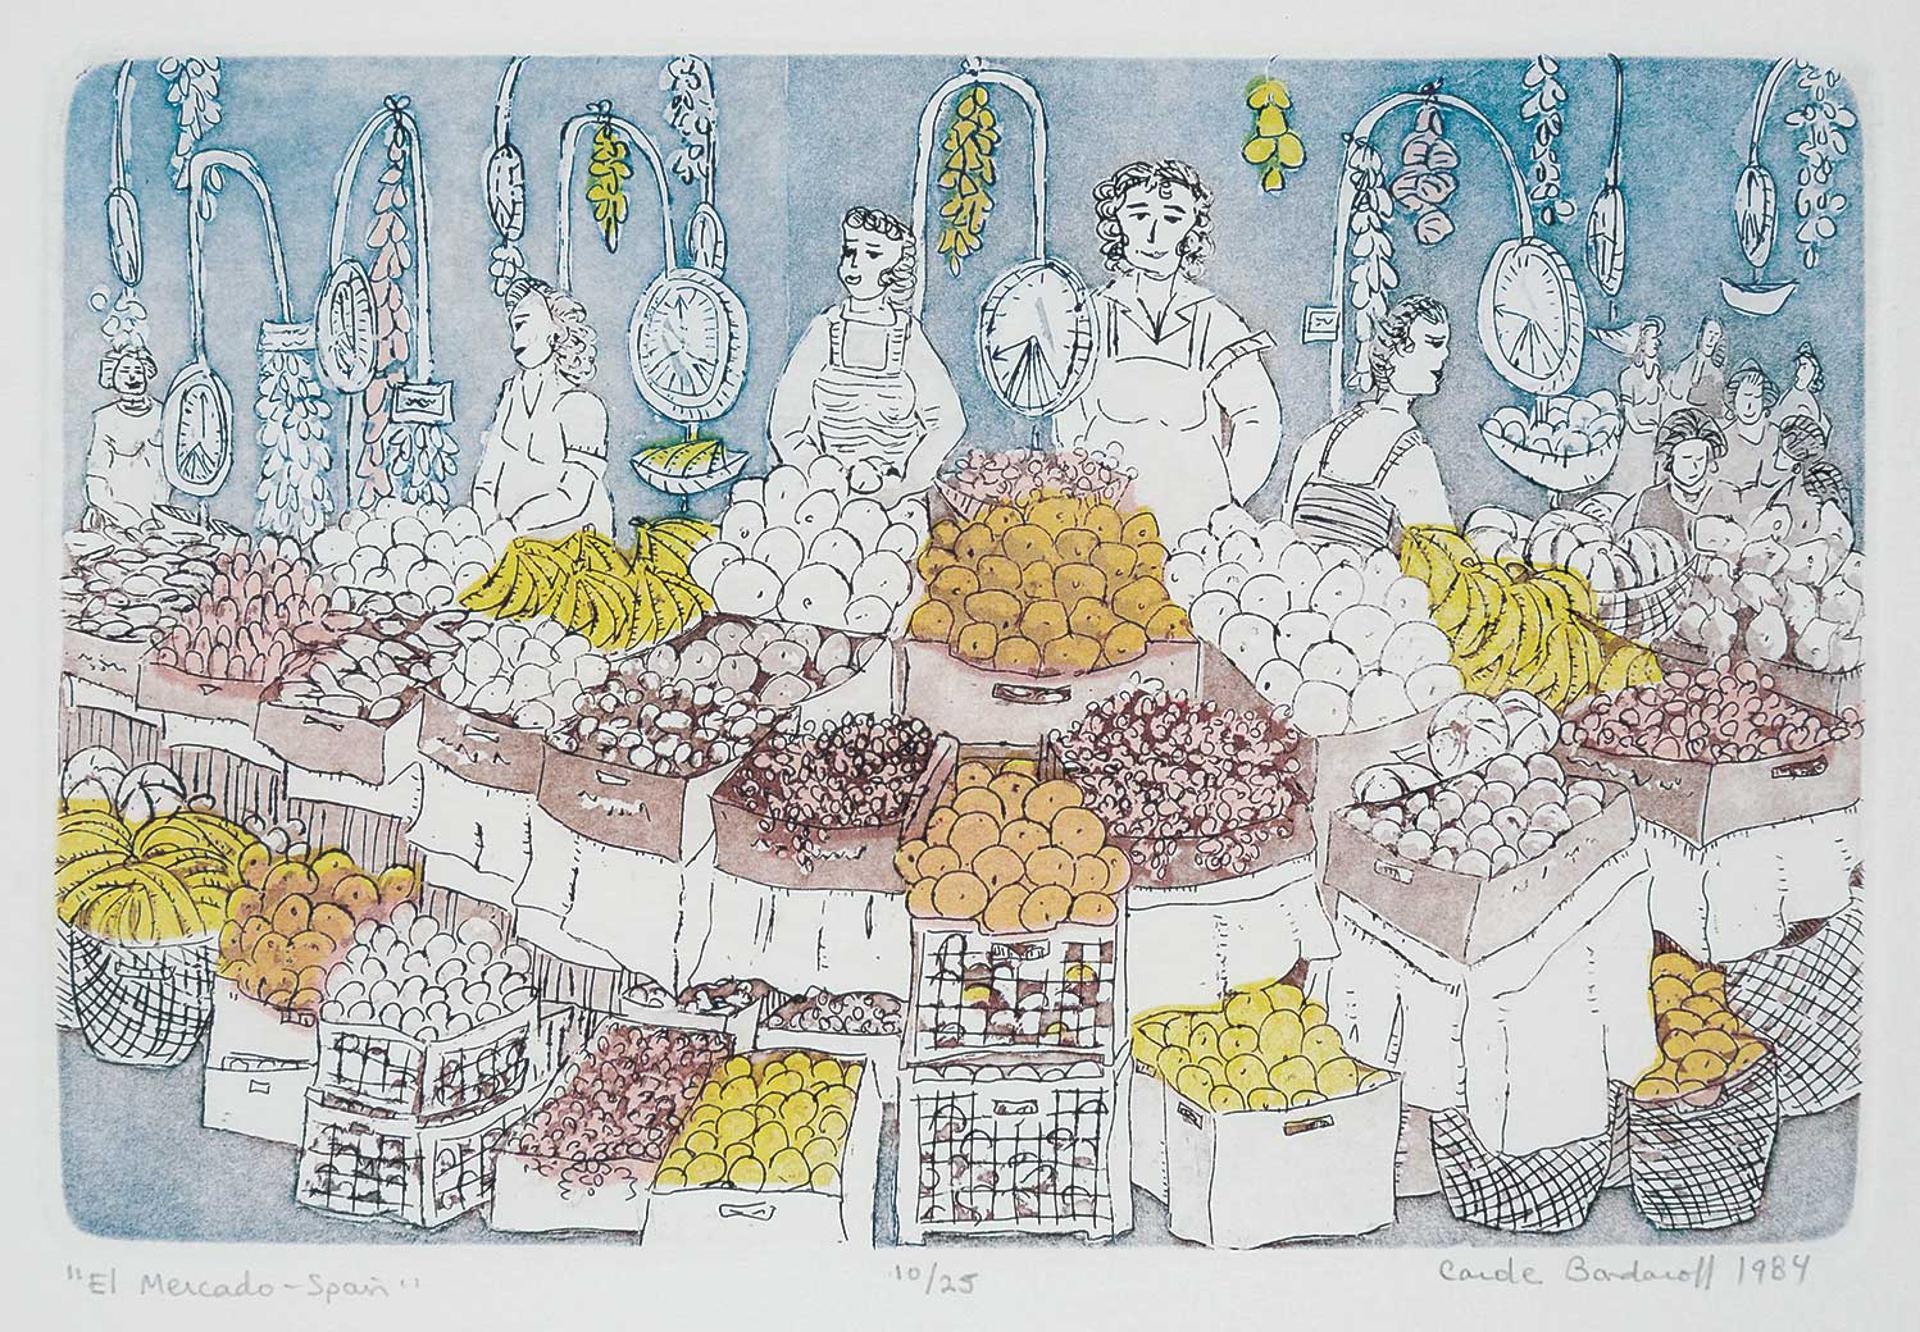 Carole Bondaroff (1952) - El Mercado - Spain  #10/25